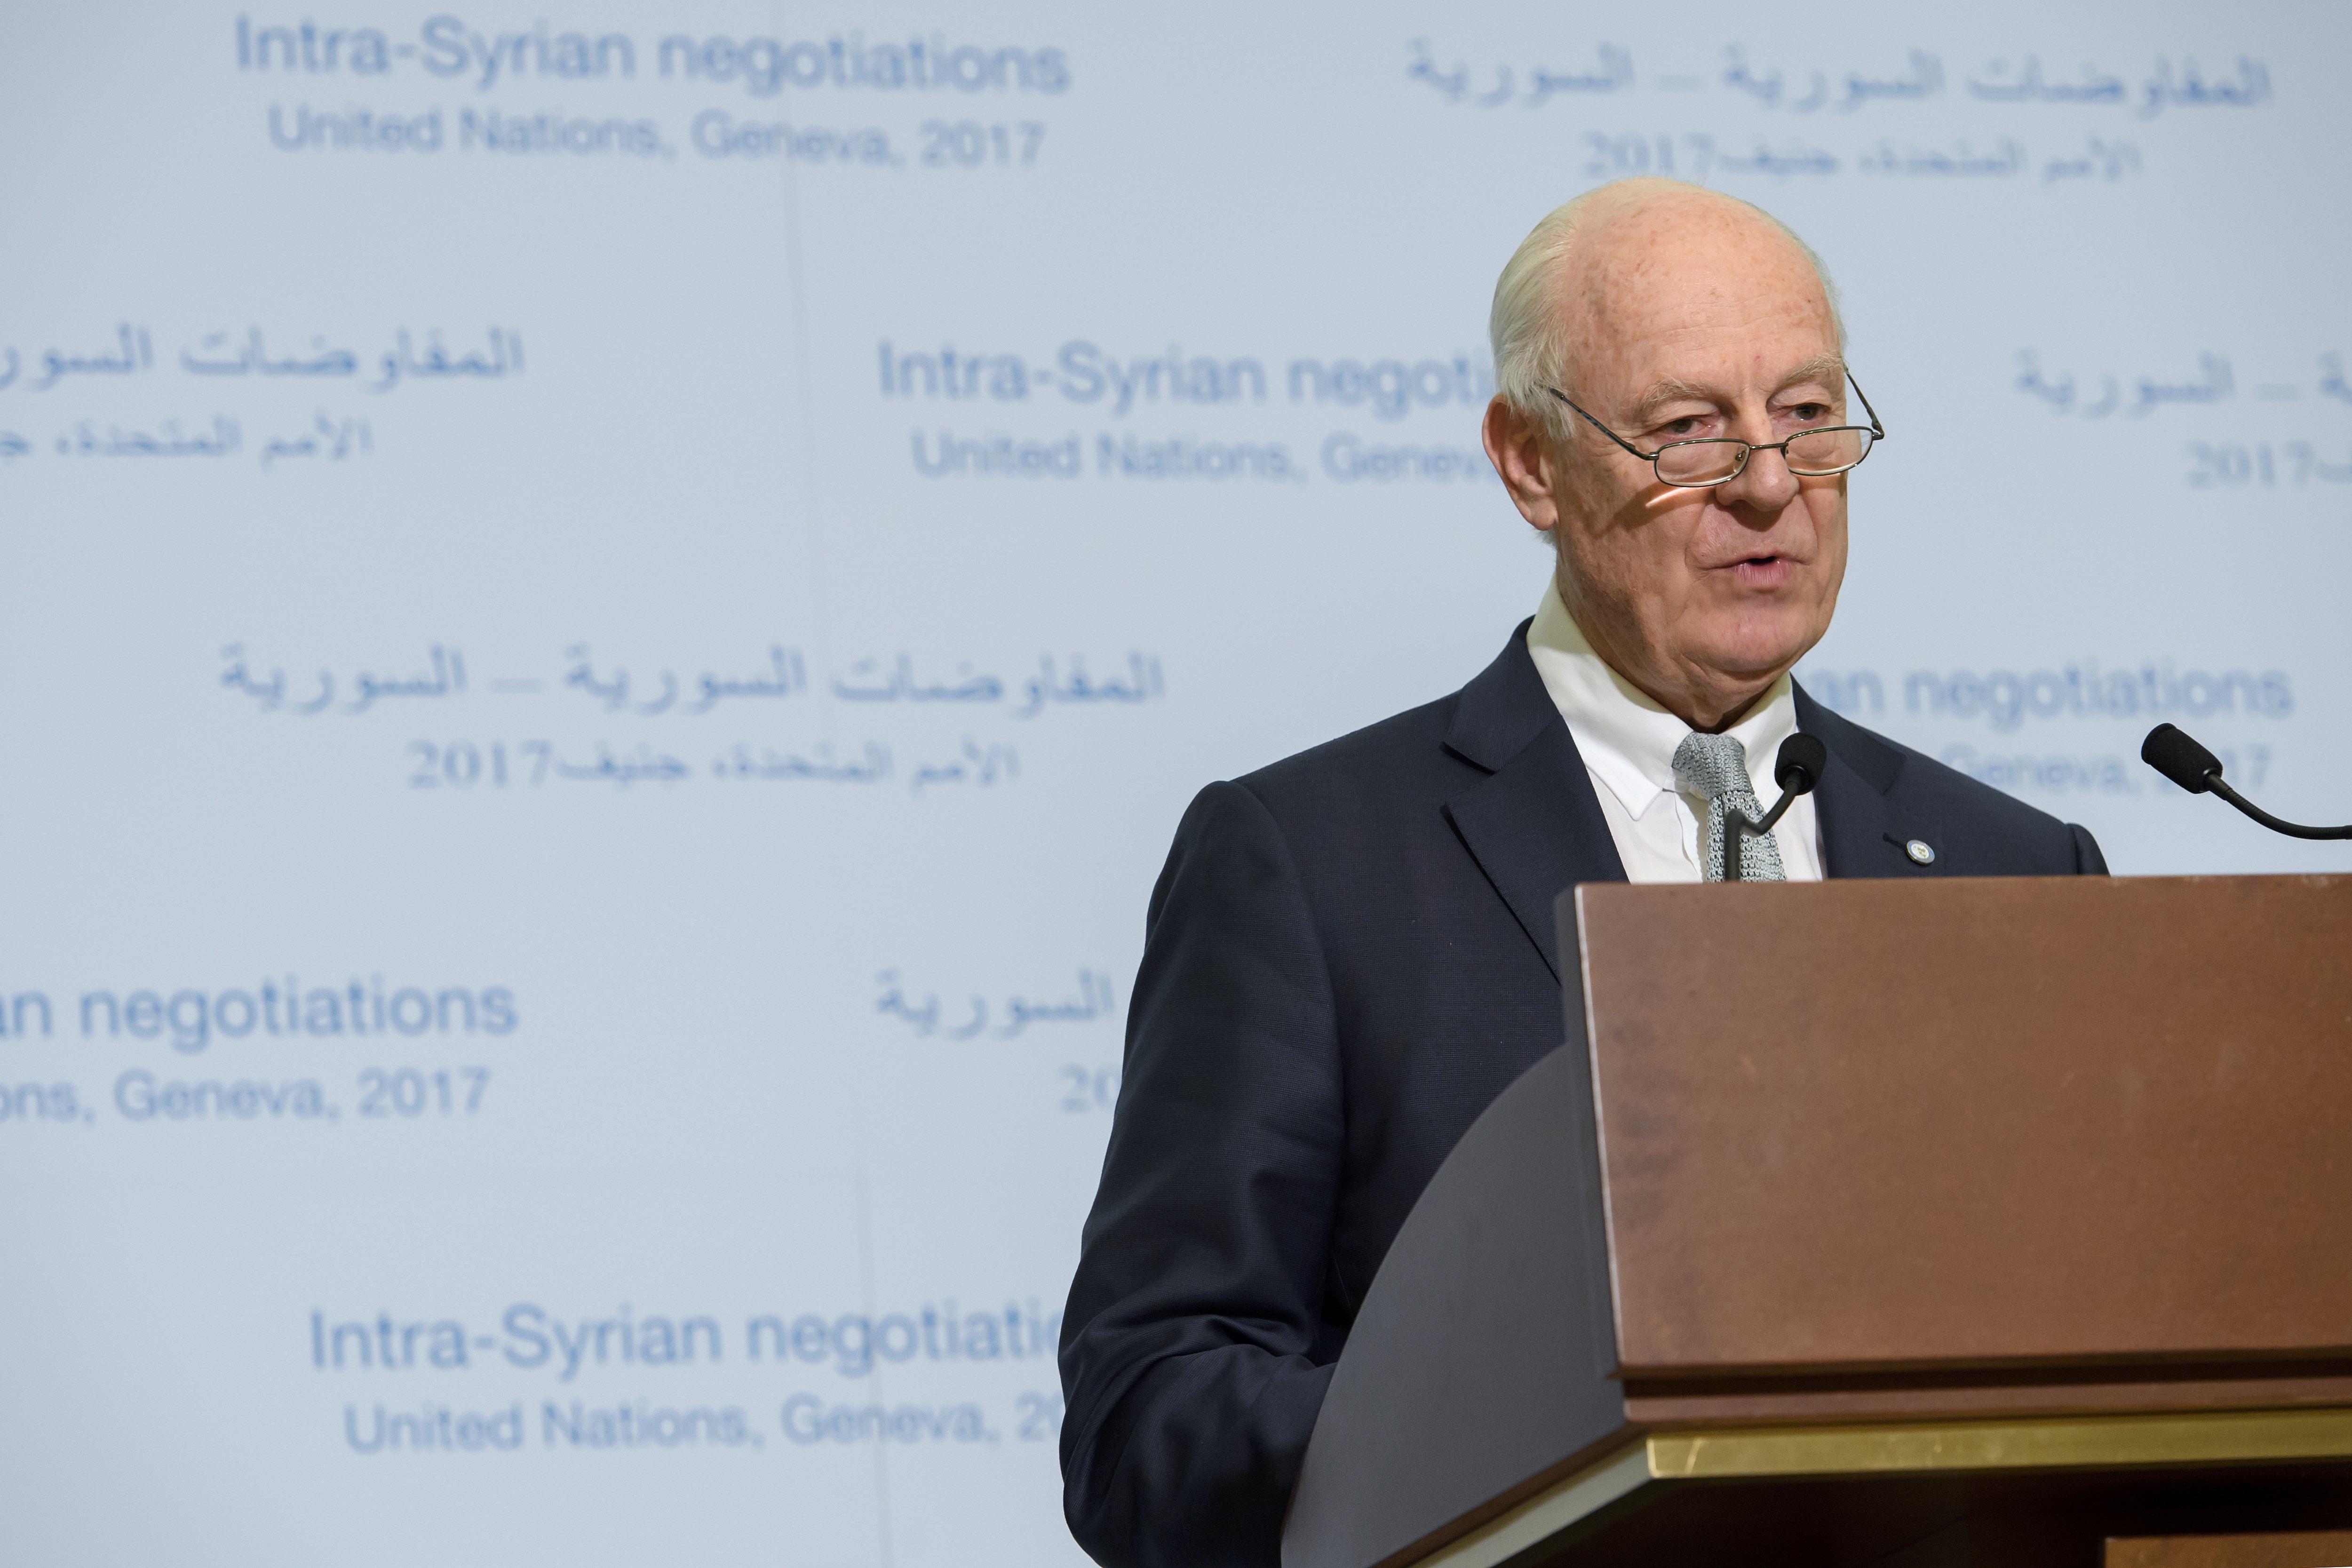 De Mistura advirtió en febrero pasado que las delegaciones del Gobierno y la oposición siria tienen 